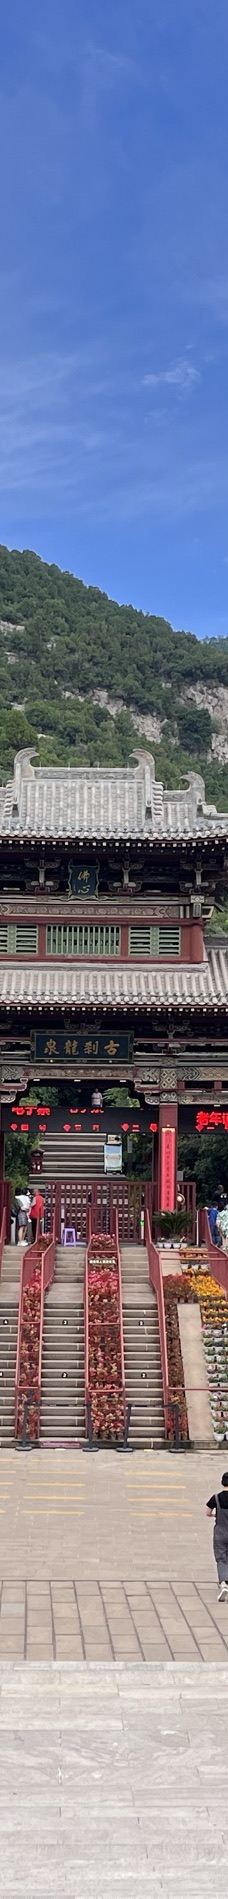 太山龙泉寺-太原-紫罗兰6605